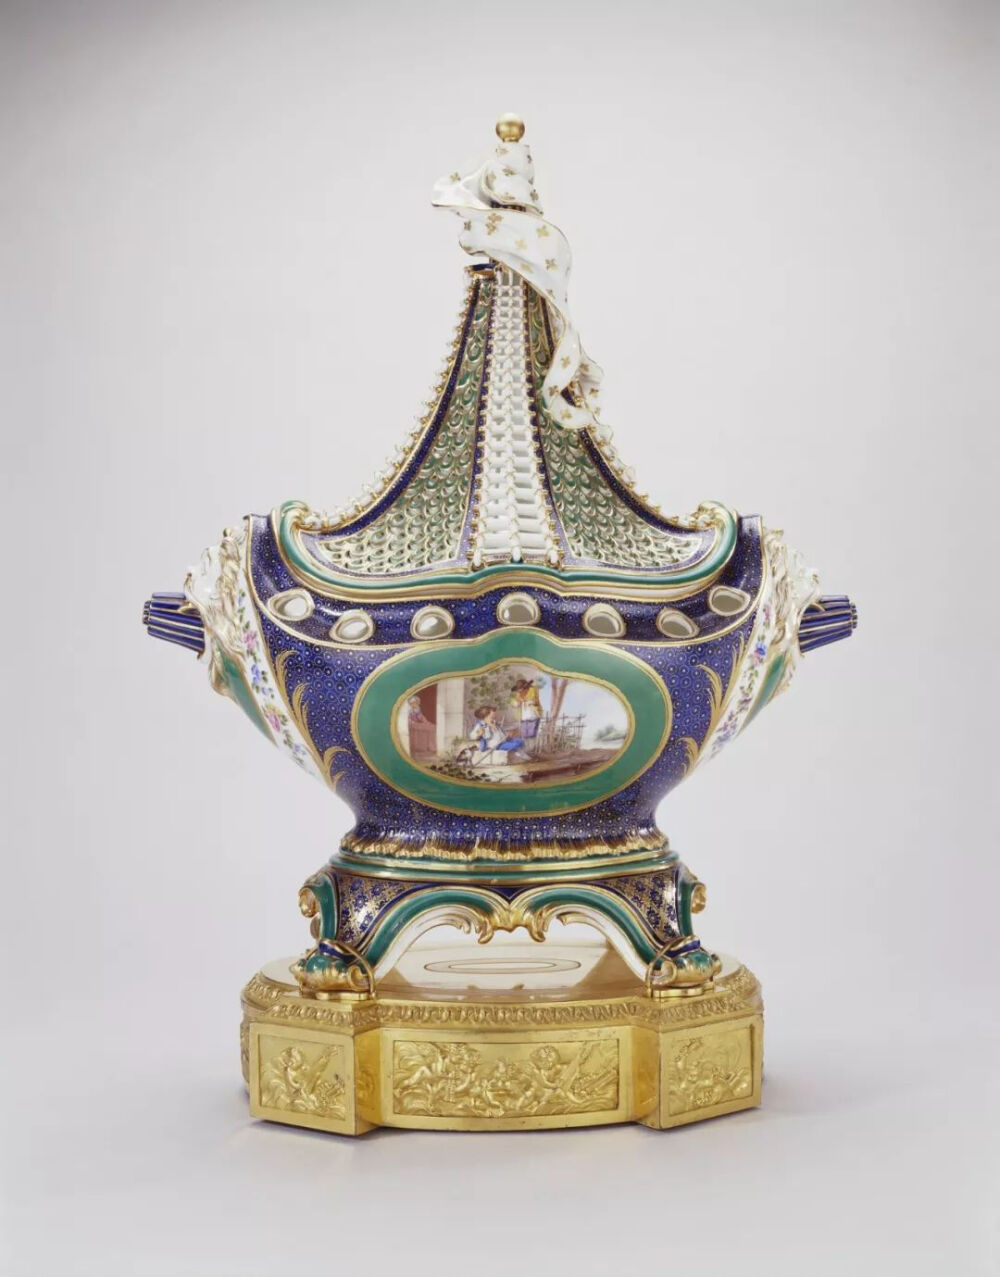 青金石蓝、绿色瓷釉船型香氛樽/1758/乔治四世购入，英国皇家收藏
船型香氛樽可以追溯到1757年，由当时的艺术总监Jean-Claude Duplessis构思设计。在当时的一批瓷器中，蓬巴杜夫人至少购买了两件以上，后来流散到世界各地。
